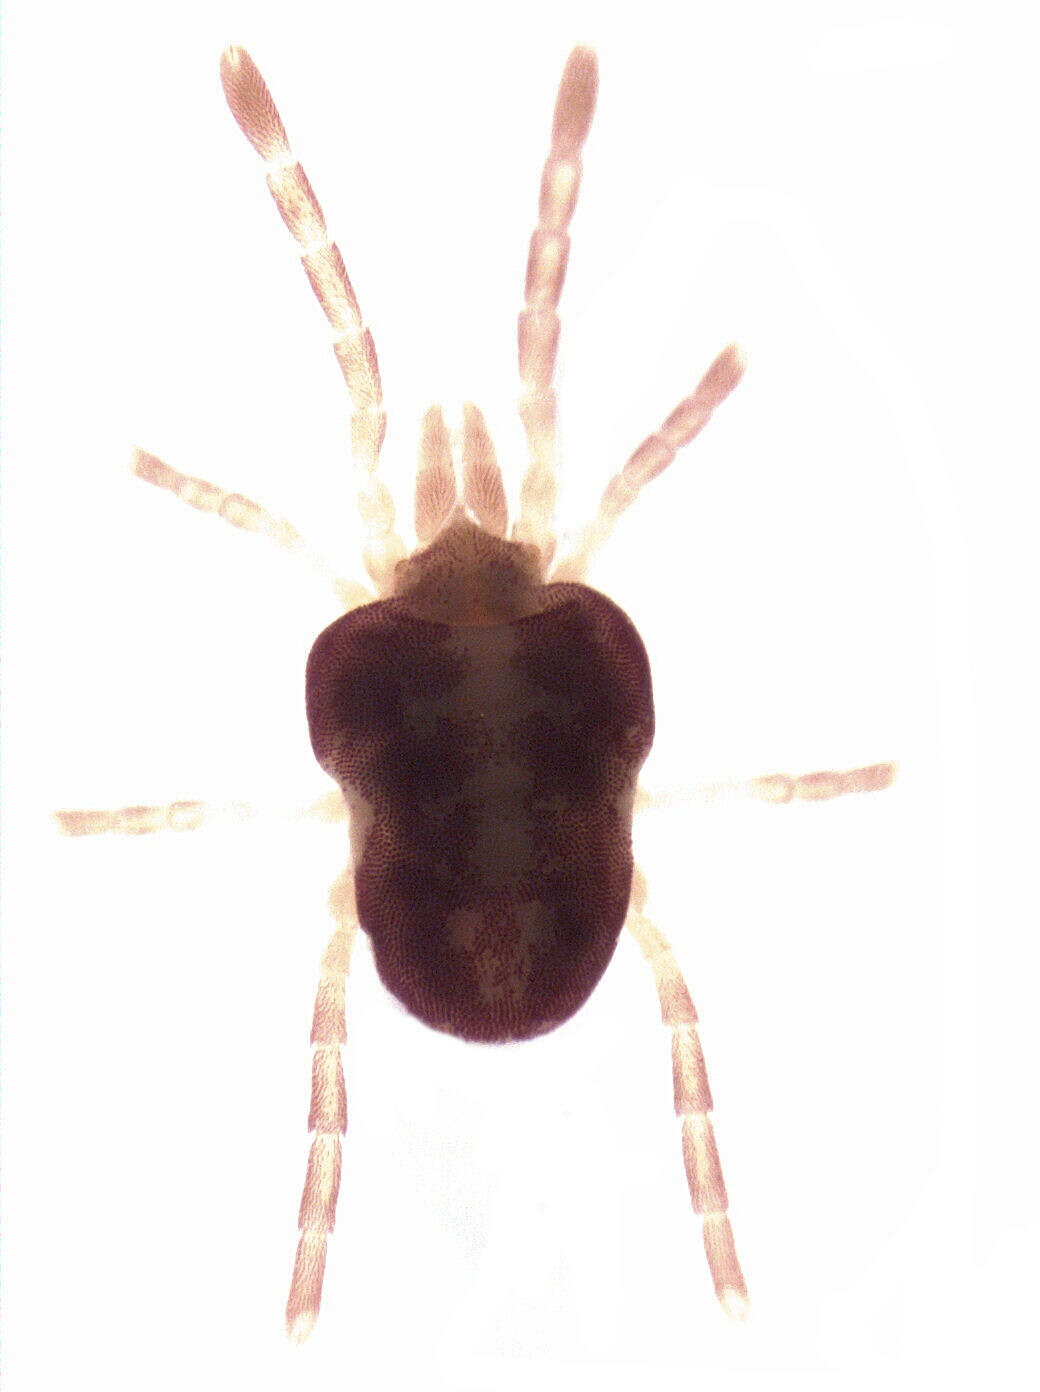 Sivun Microtrombidiidae kuva